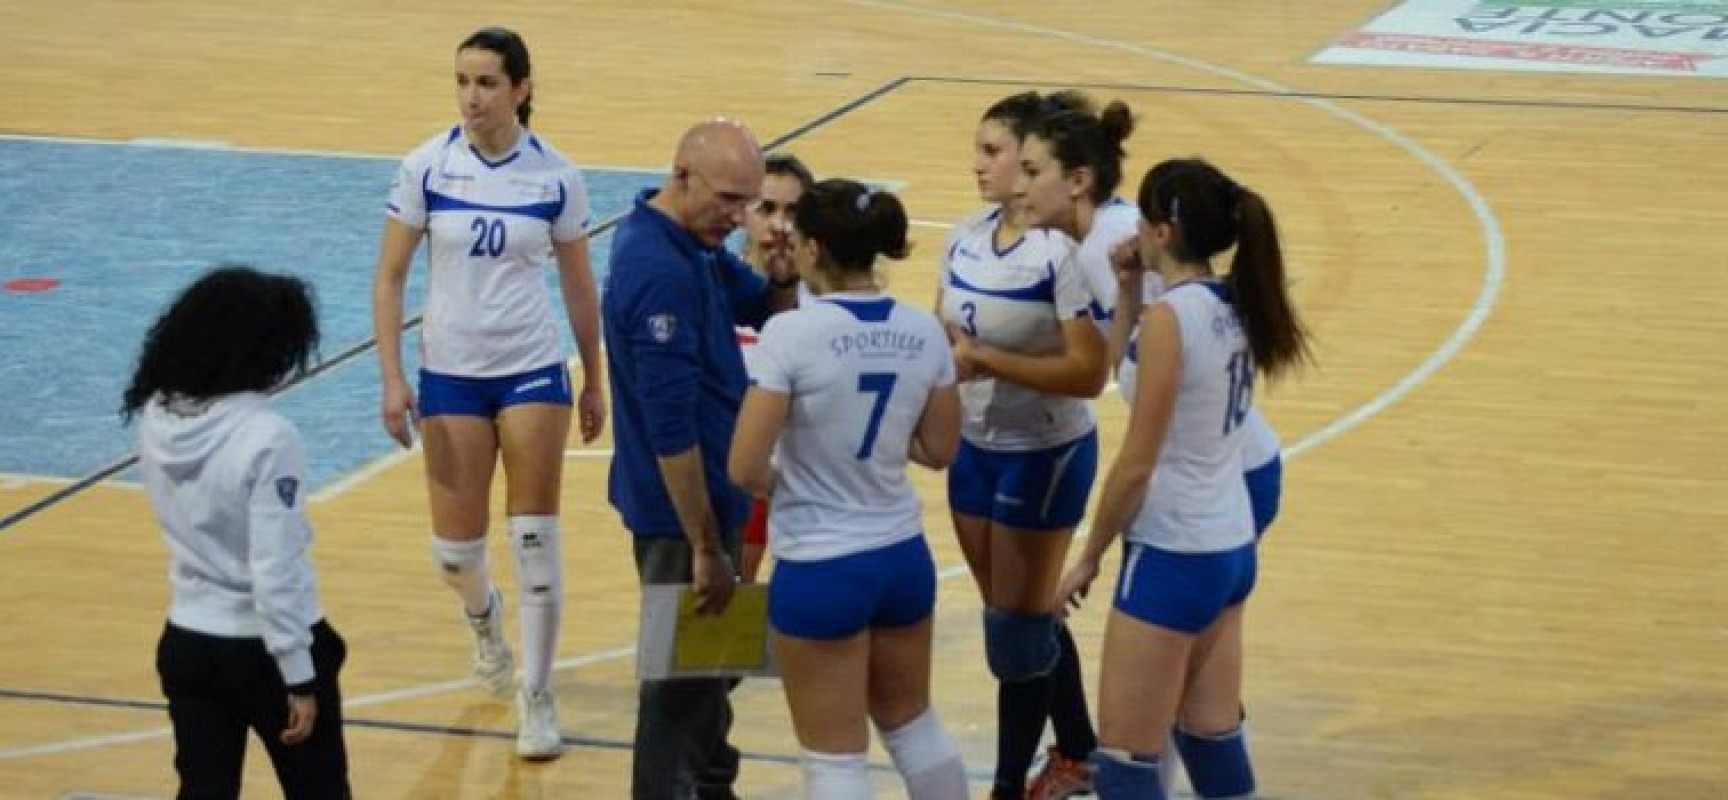 Sportilia impegnata a Bari nell’ultimo turno di campionato